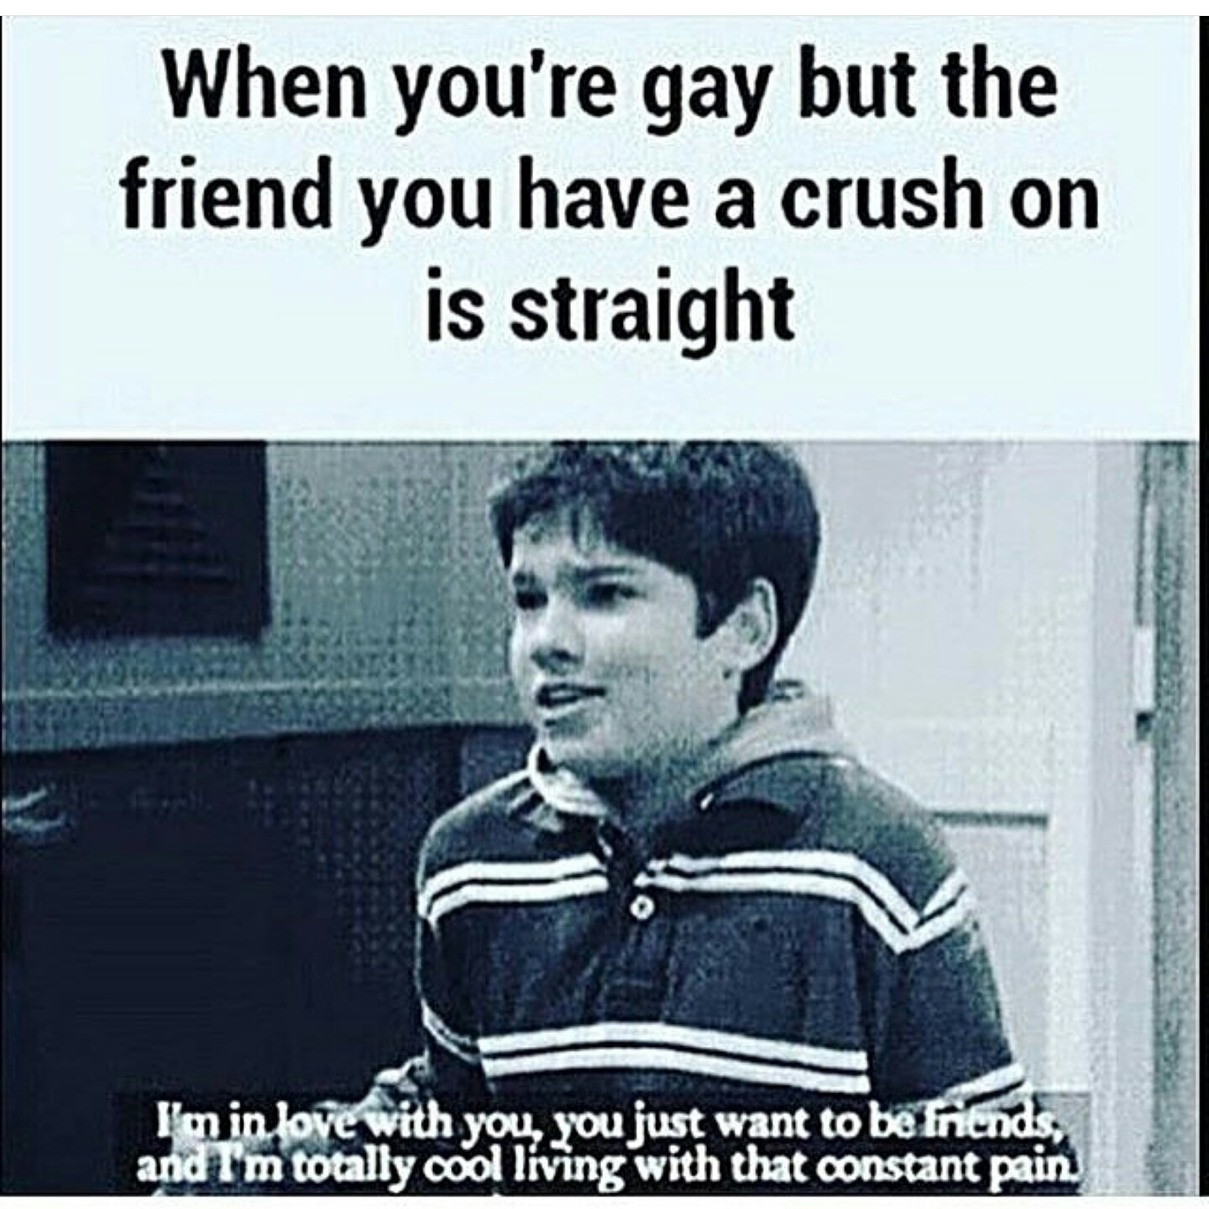 I'm gay af tbh - meme